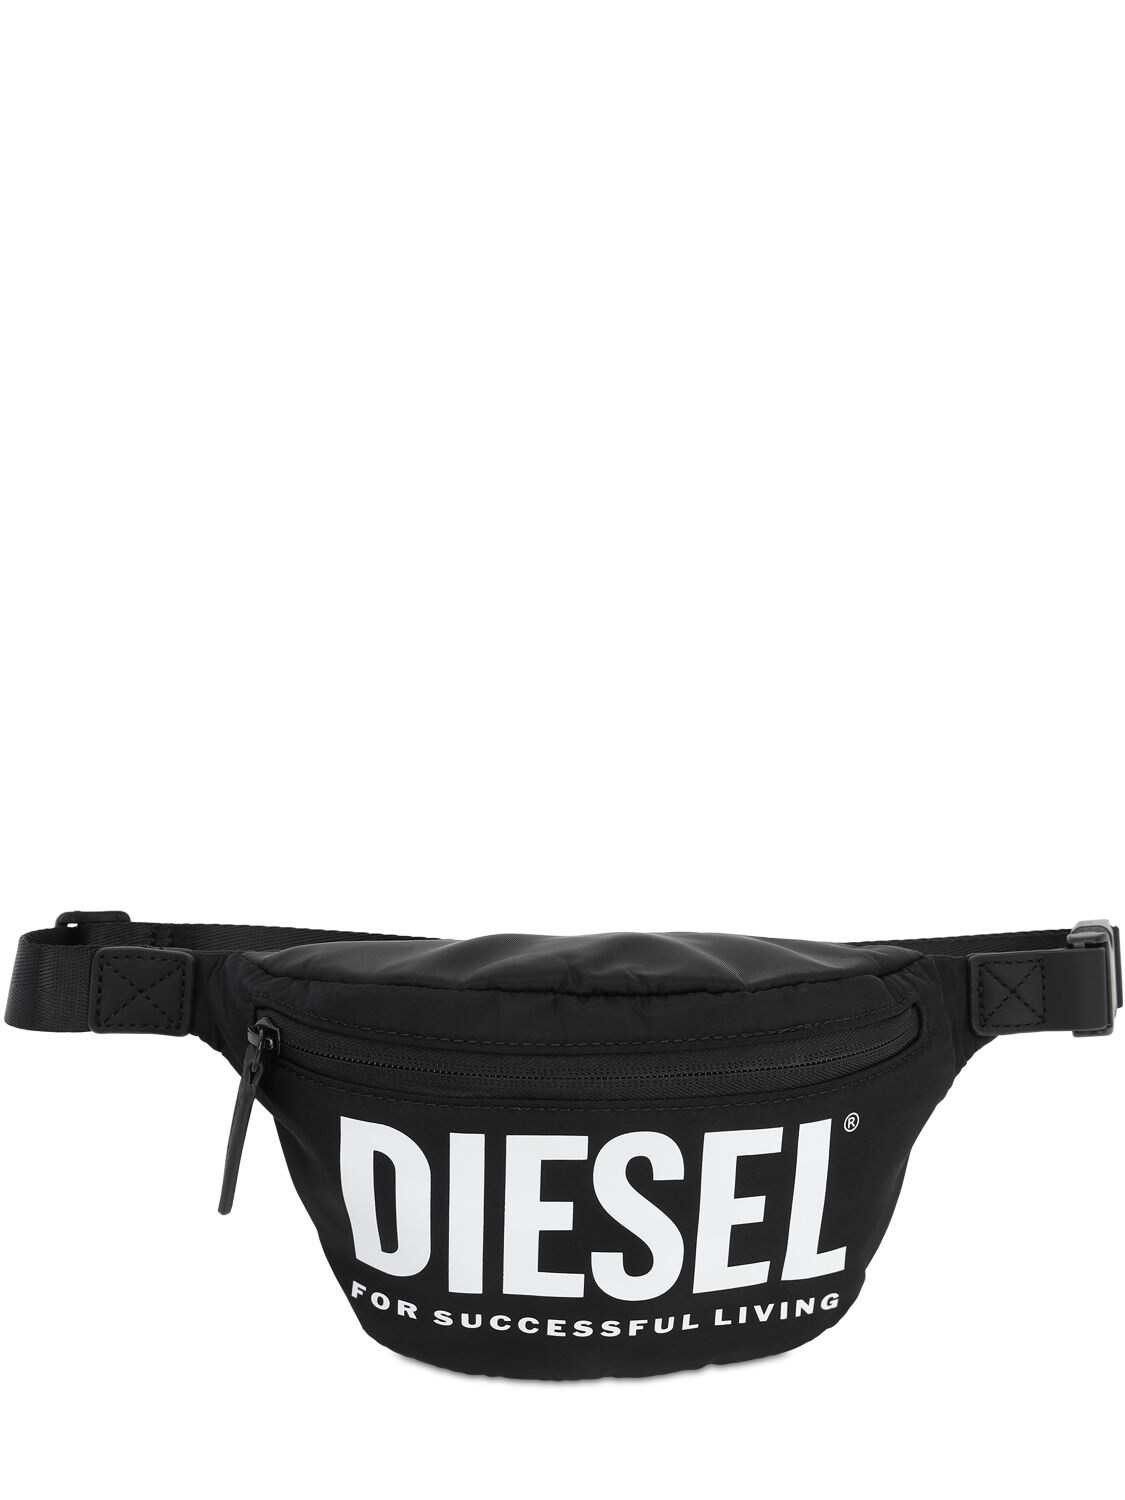 Diesel Kids' Logo Printed Nylon Belt Bag In Black